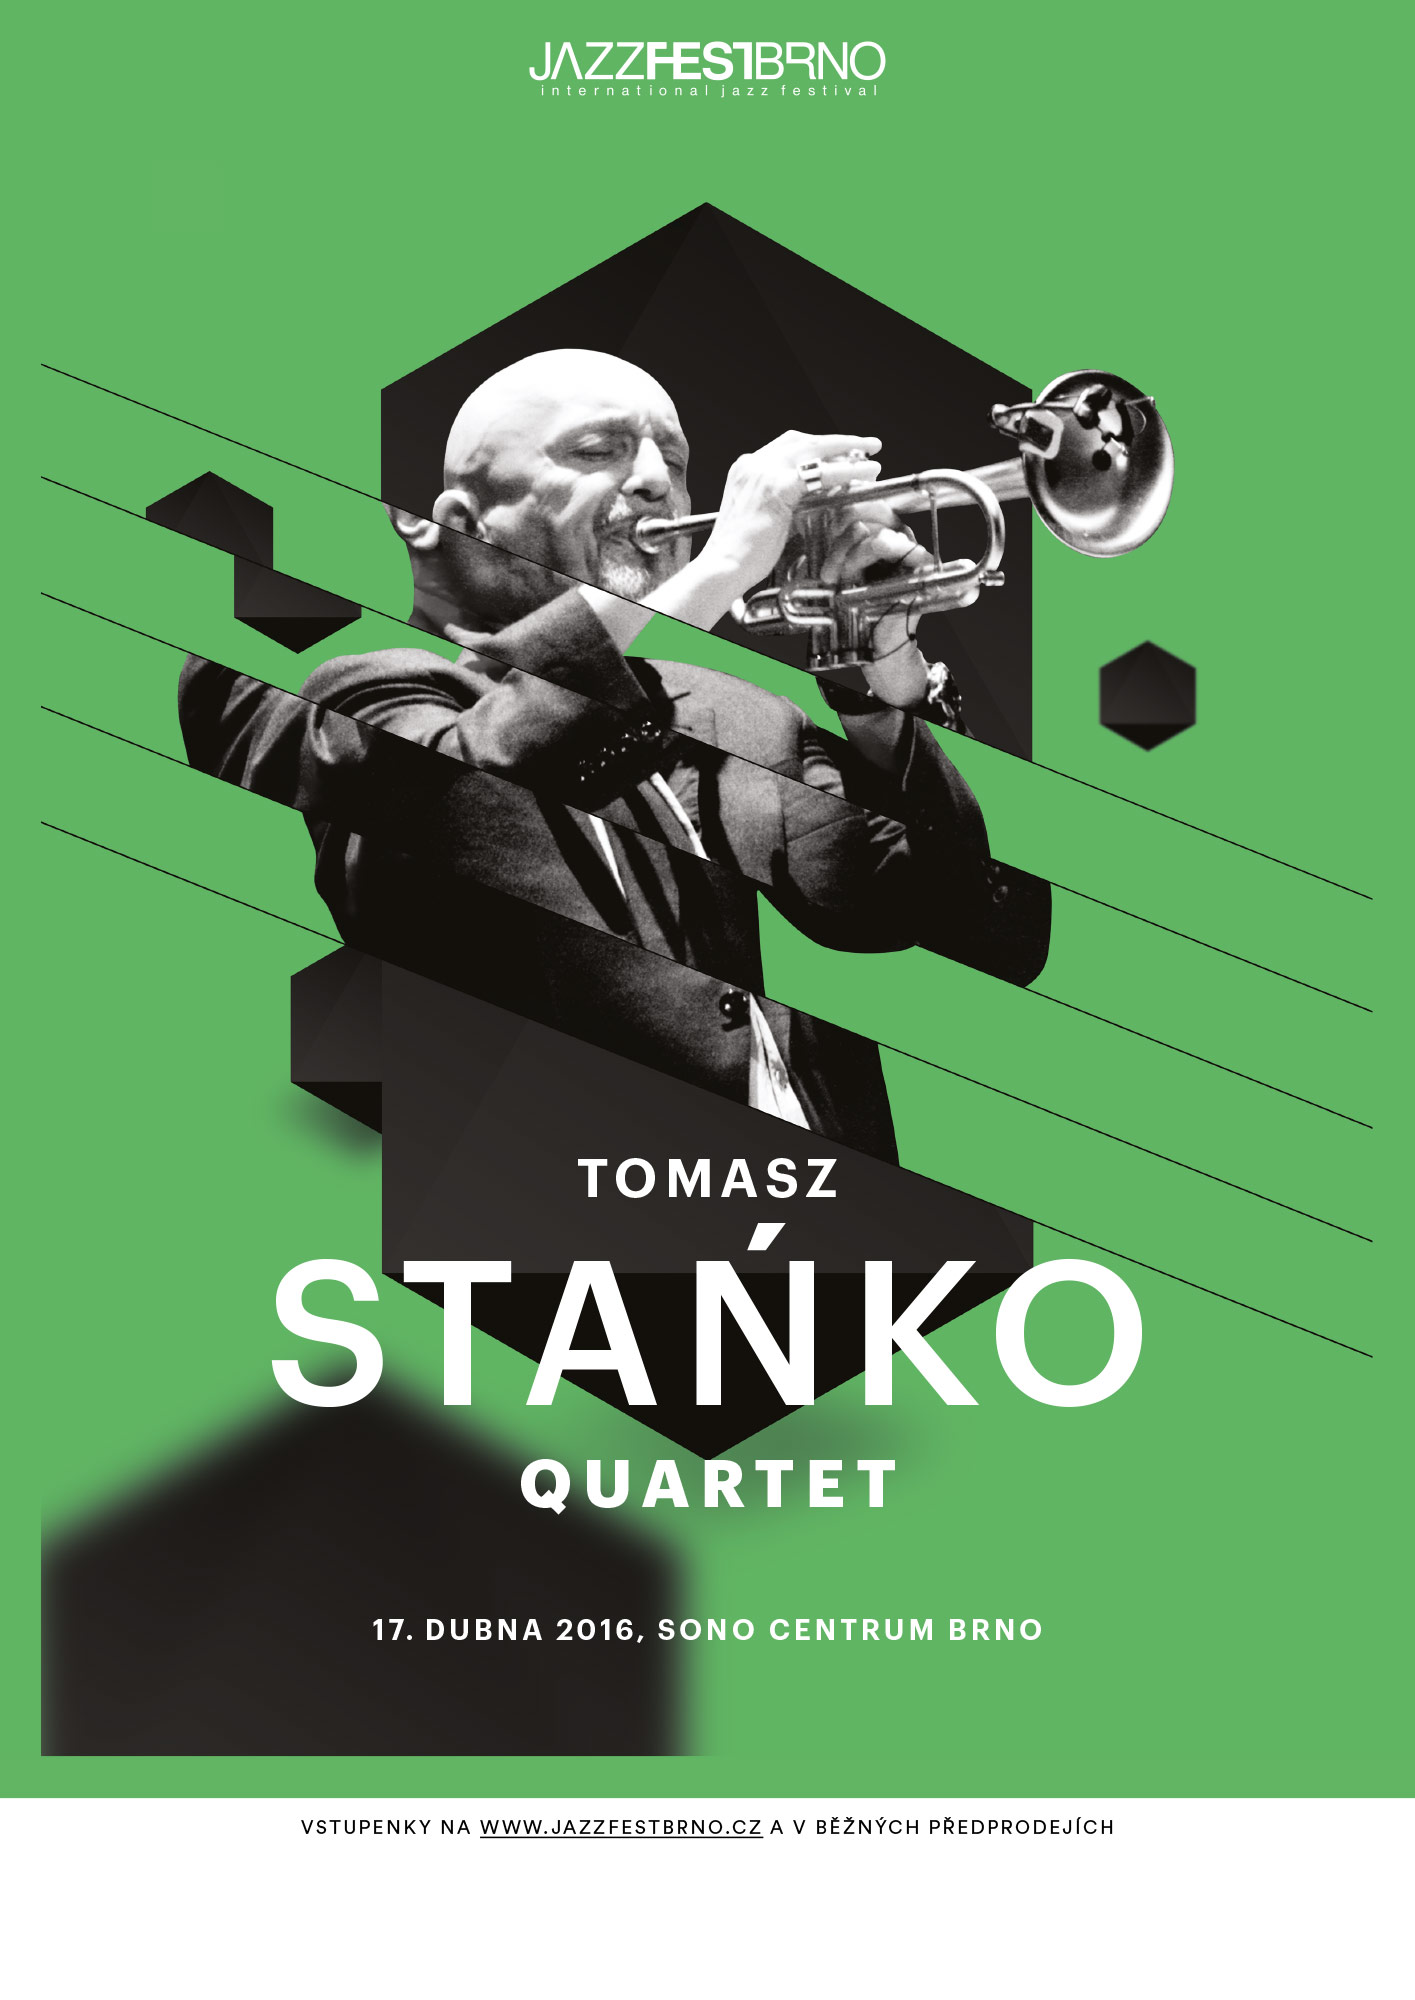 Jazzfestbrno 2016 - Tomasz Stańko Quartet